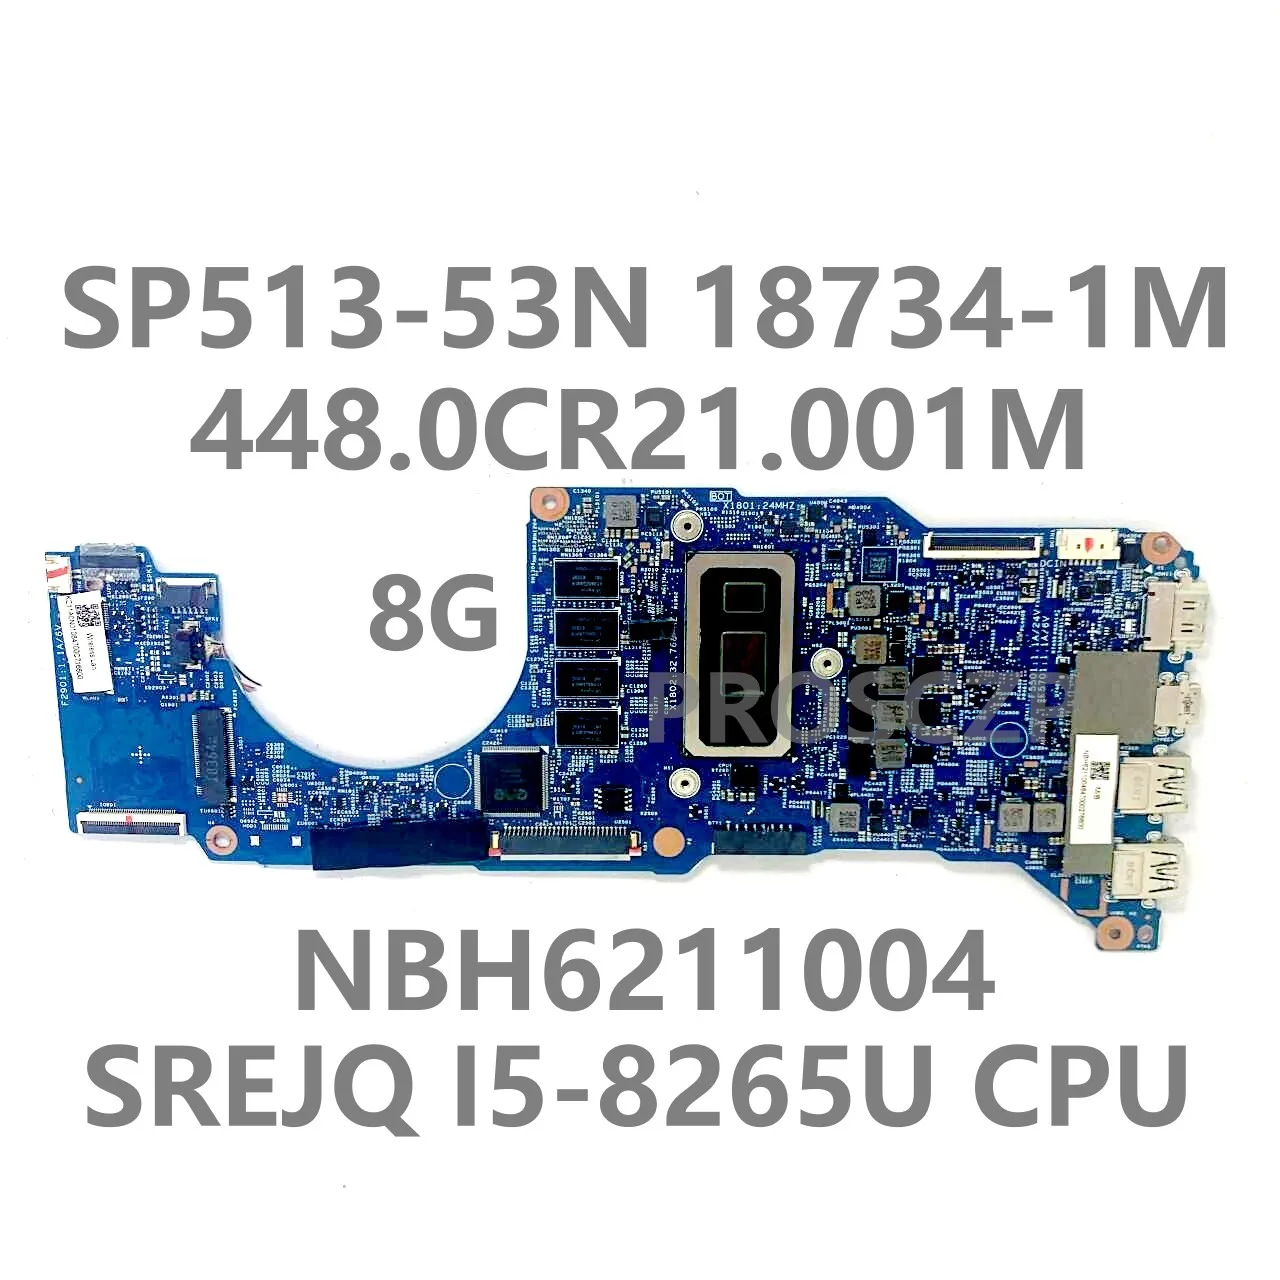 

For ACER SP513-52 SP513-53 SP513-53N 448.0CR21.001M Laptop Motherboard 18734-1M W/SREJQ I5-8265U CPU NBH6211004 8G 100%Tested OK